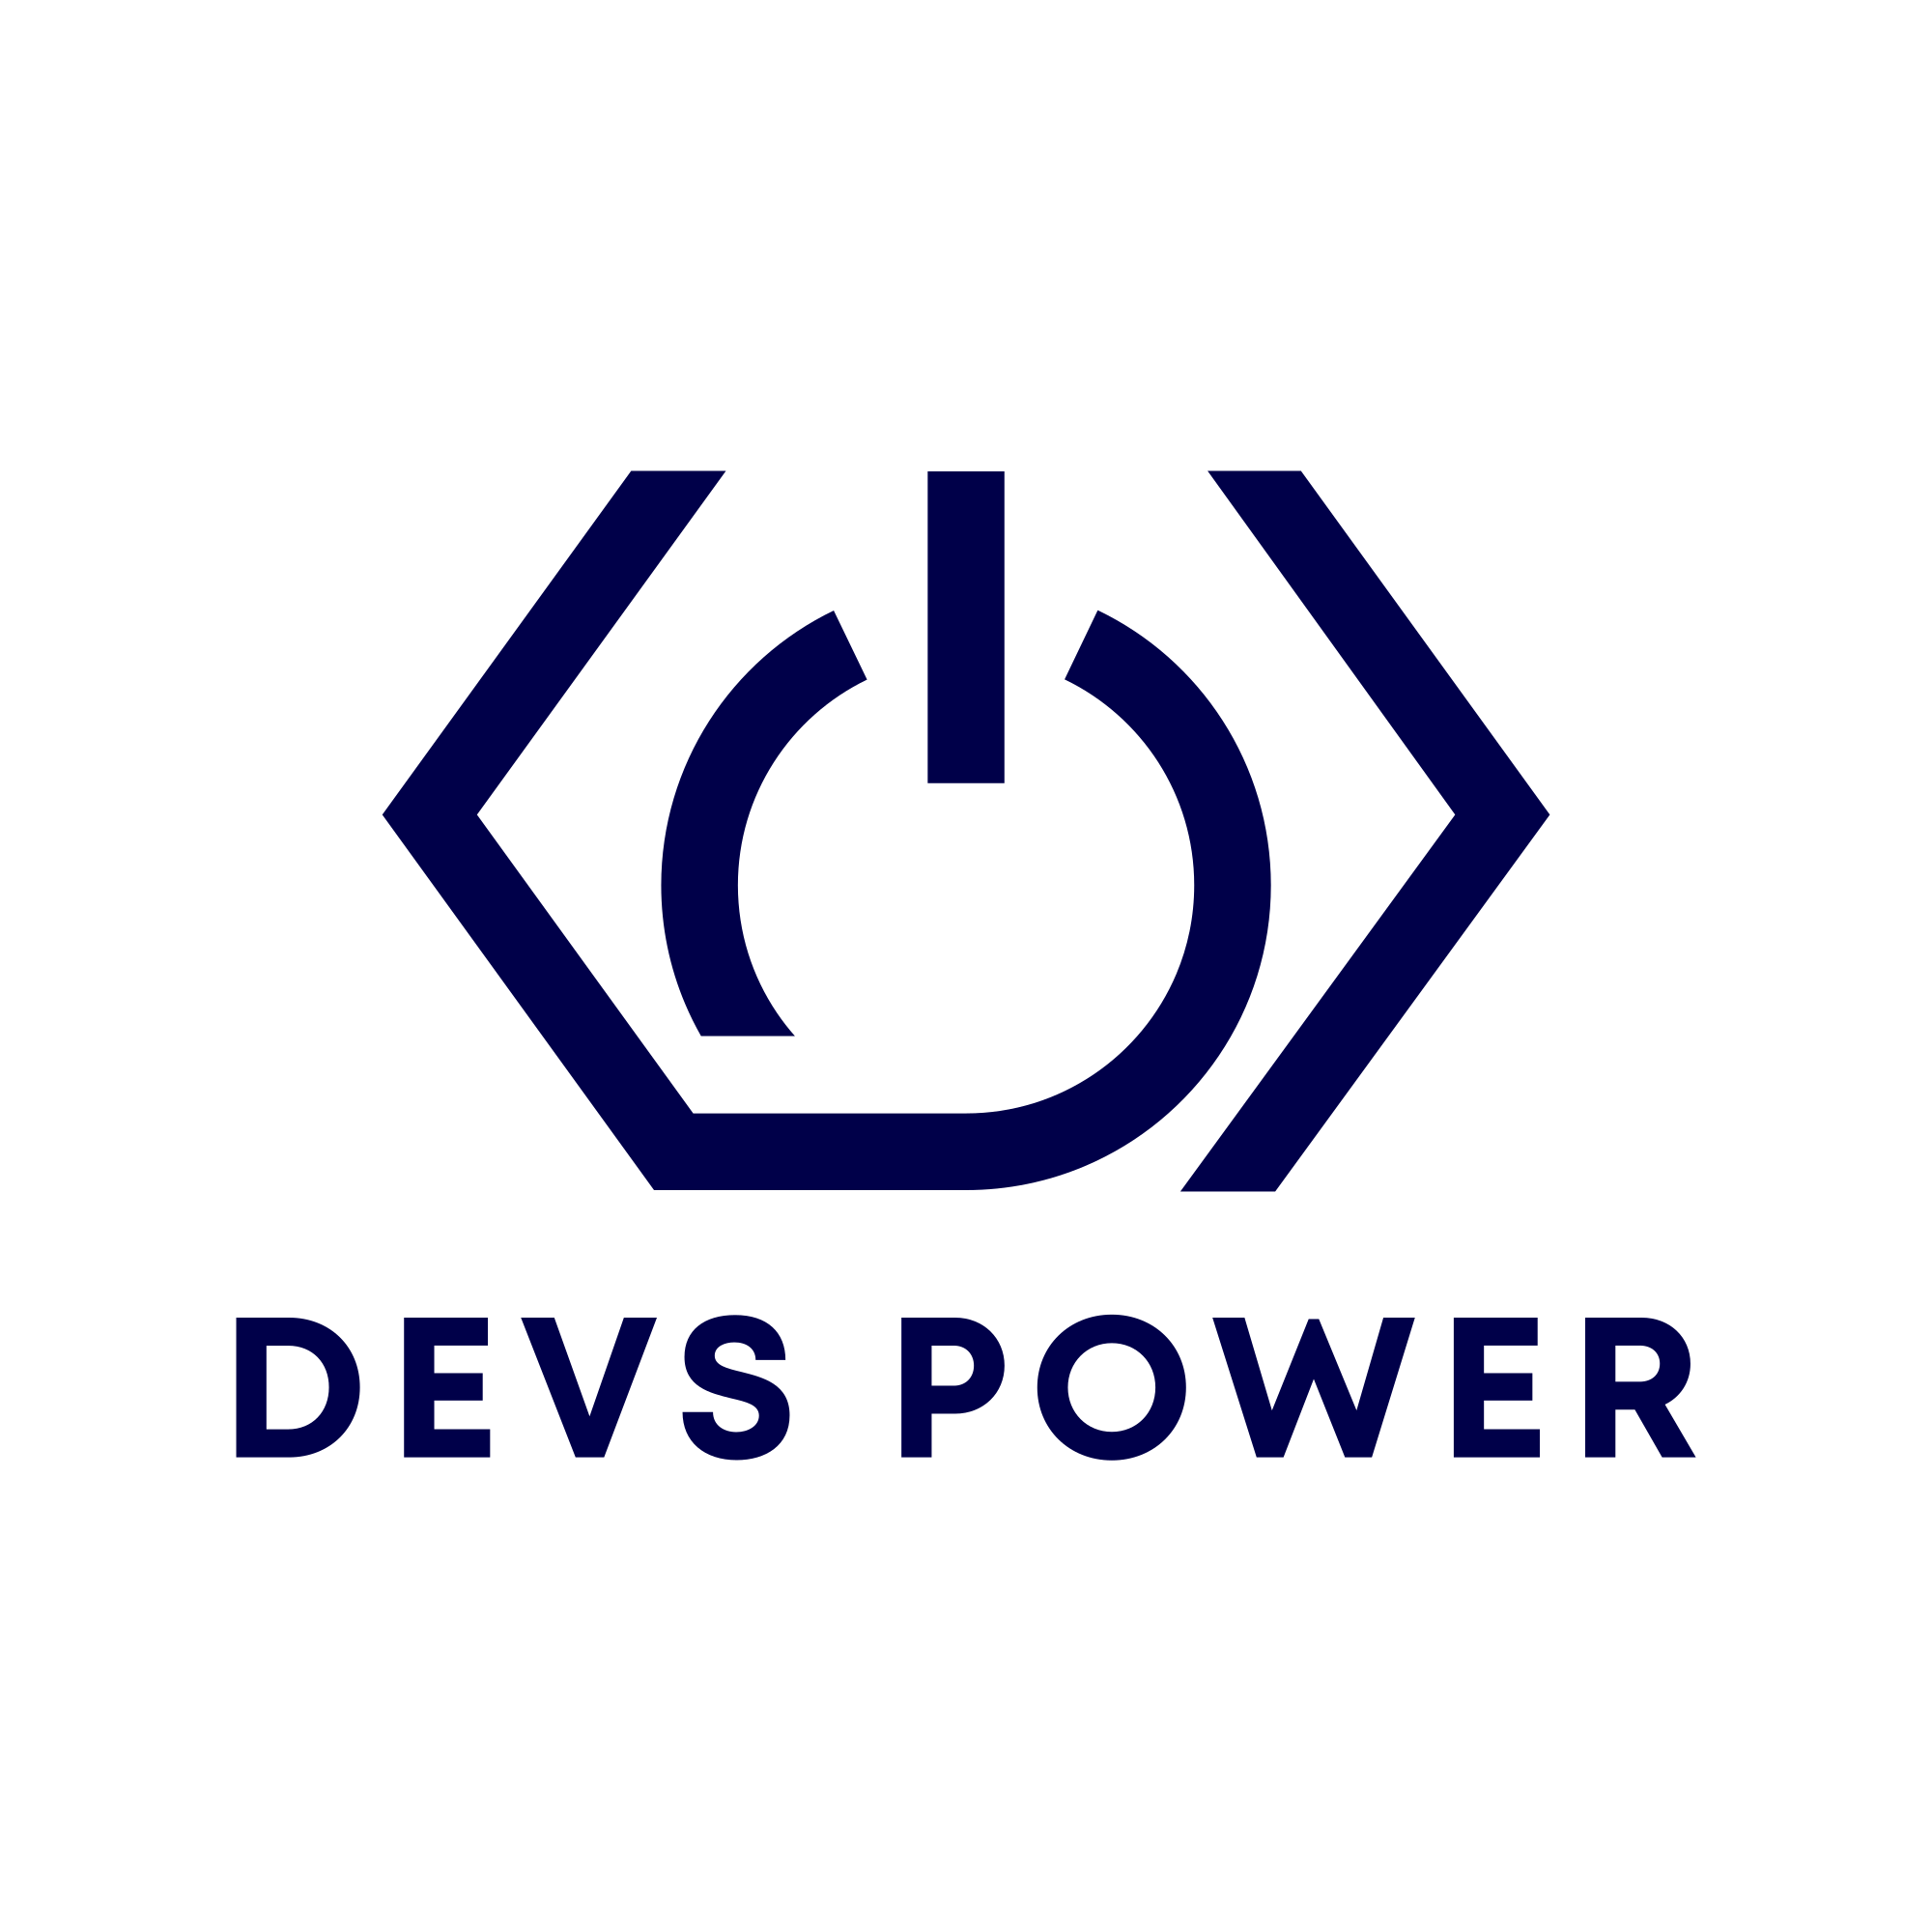 DevsPower logo with title